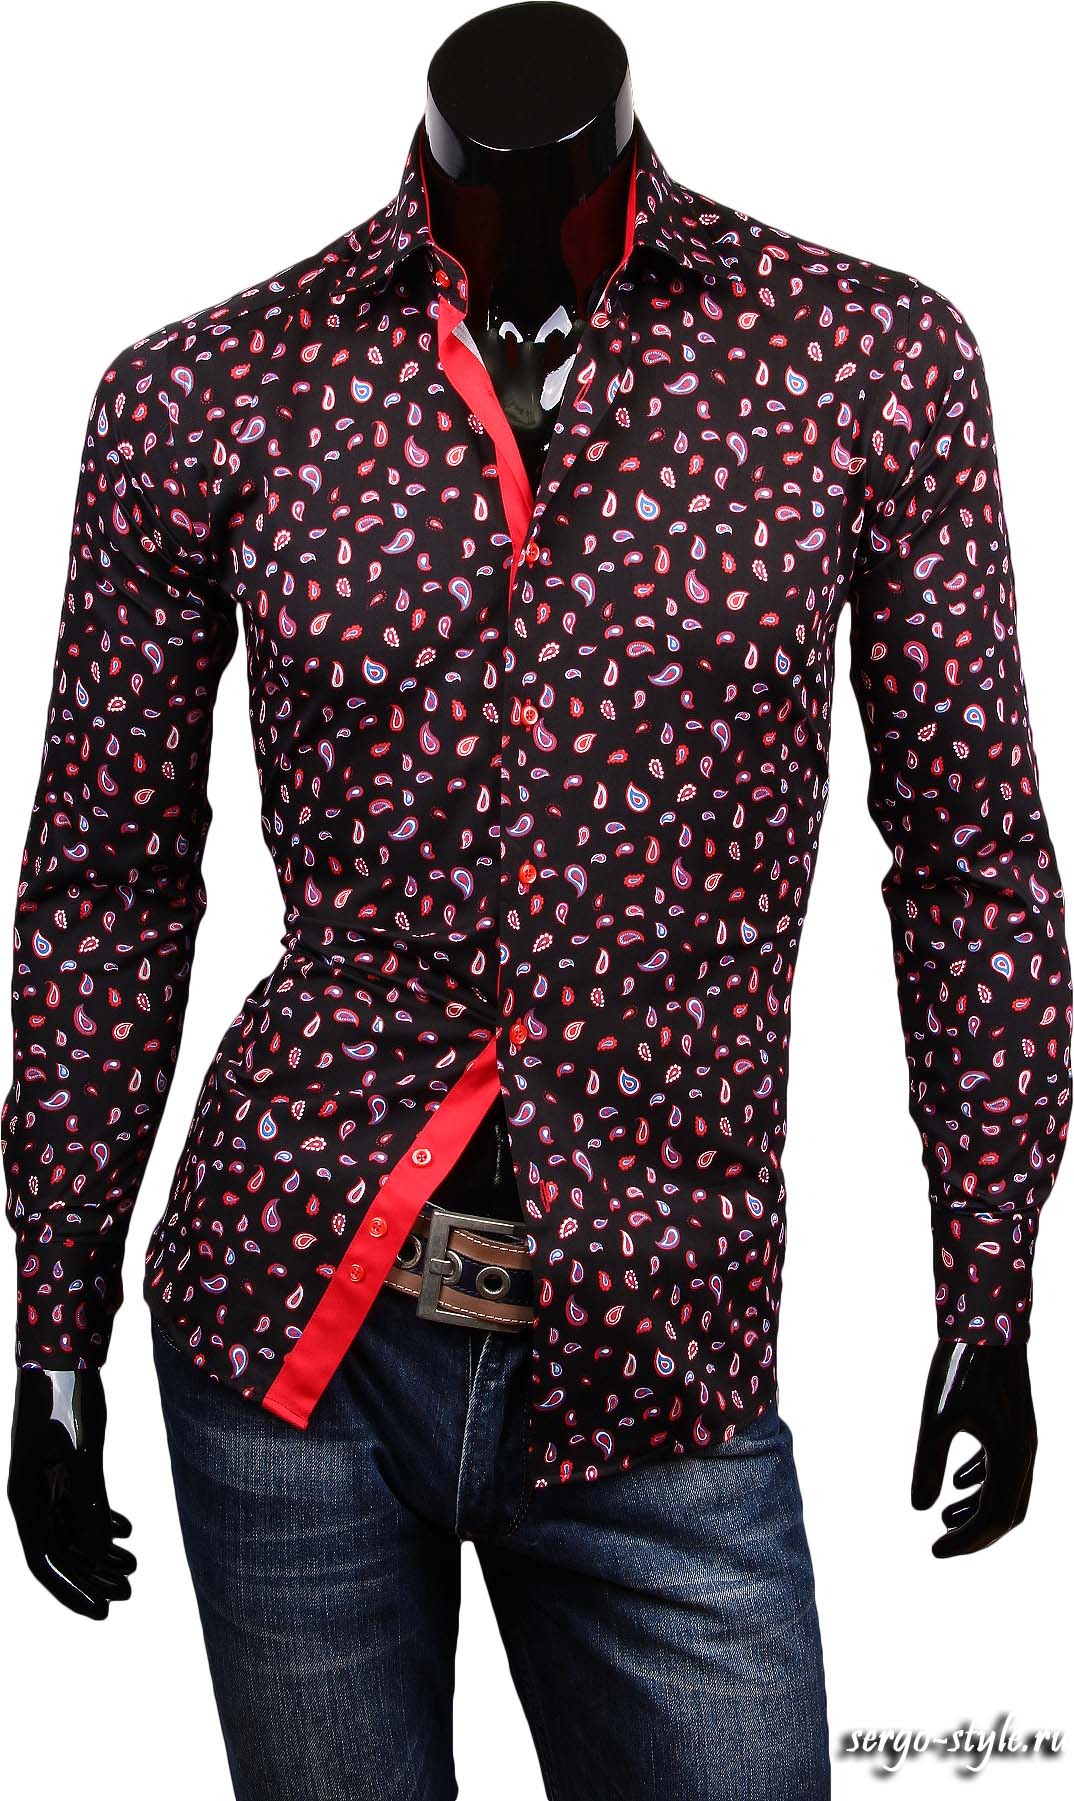 Рубашка Paolo Bertolucci приталенная цвет черный в листьях купить в Москве недорого